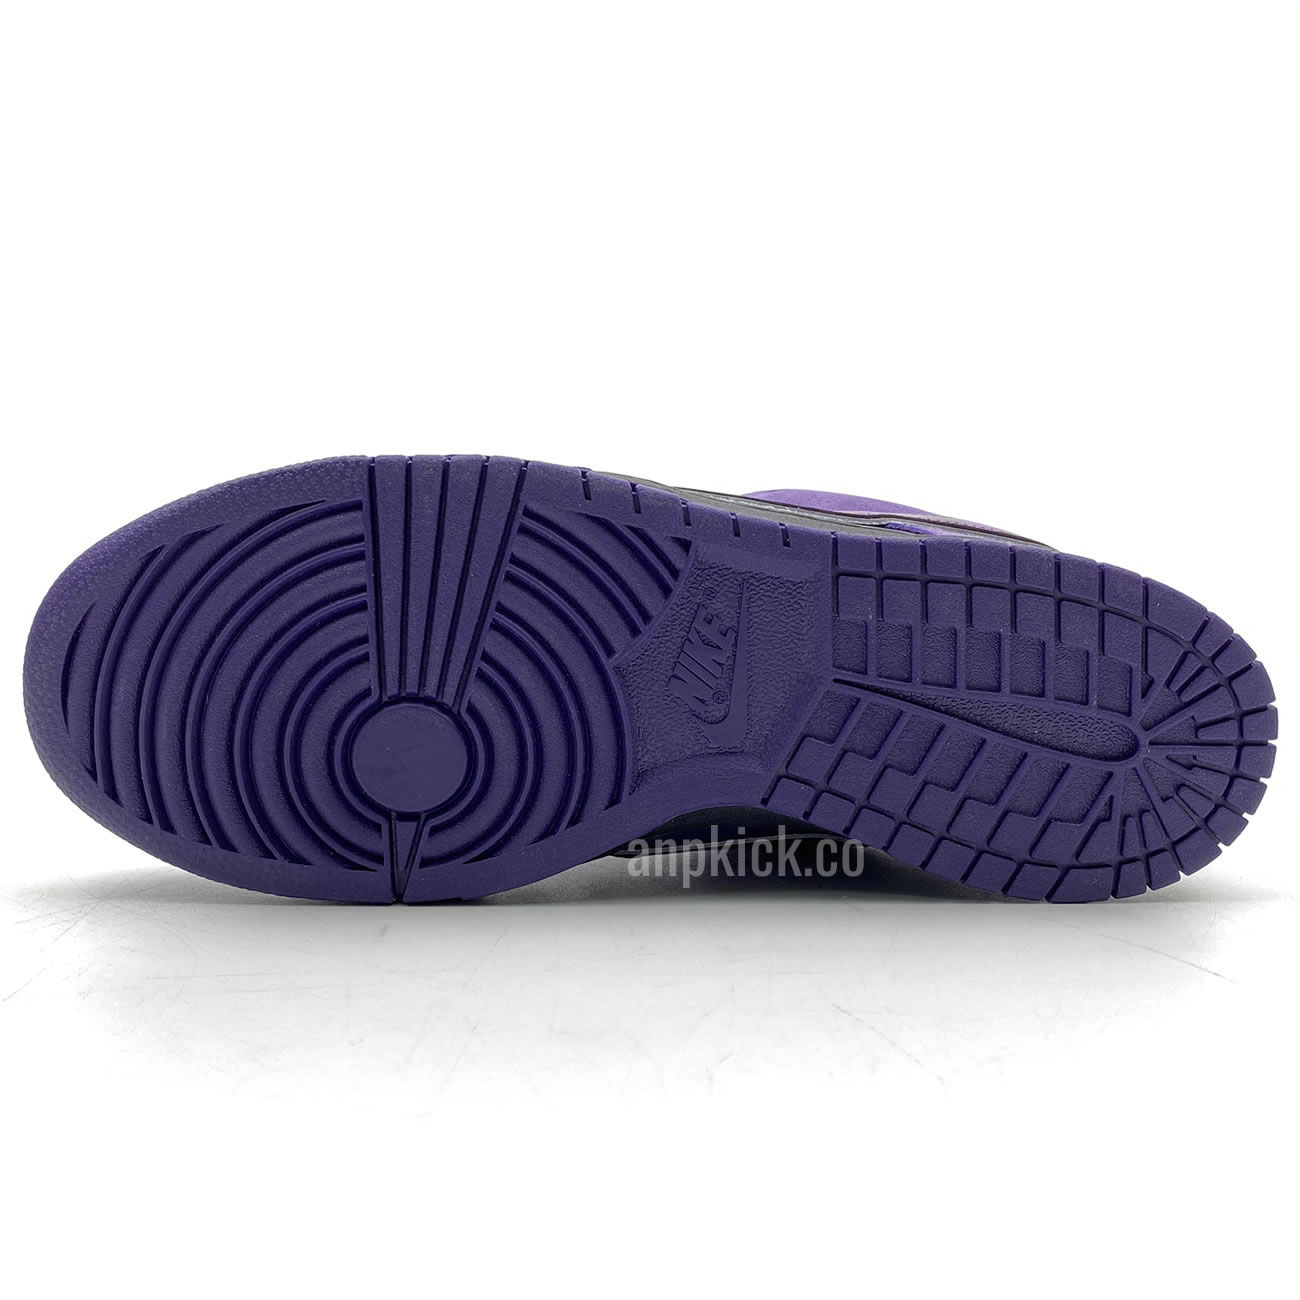 Anpkick Nike Sb Dunk Low Concepts Purple Lobster Bv1310 55570 (6) - newkick.org